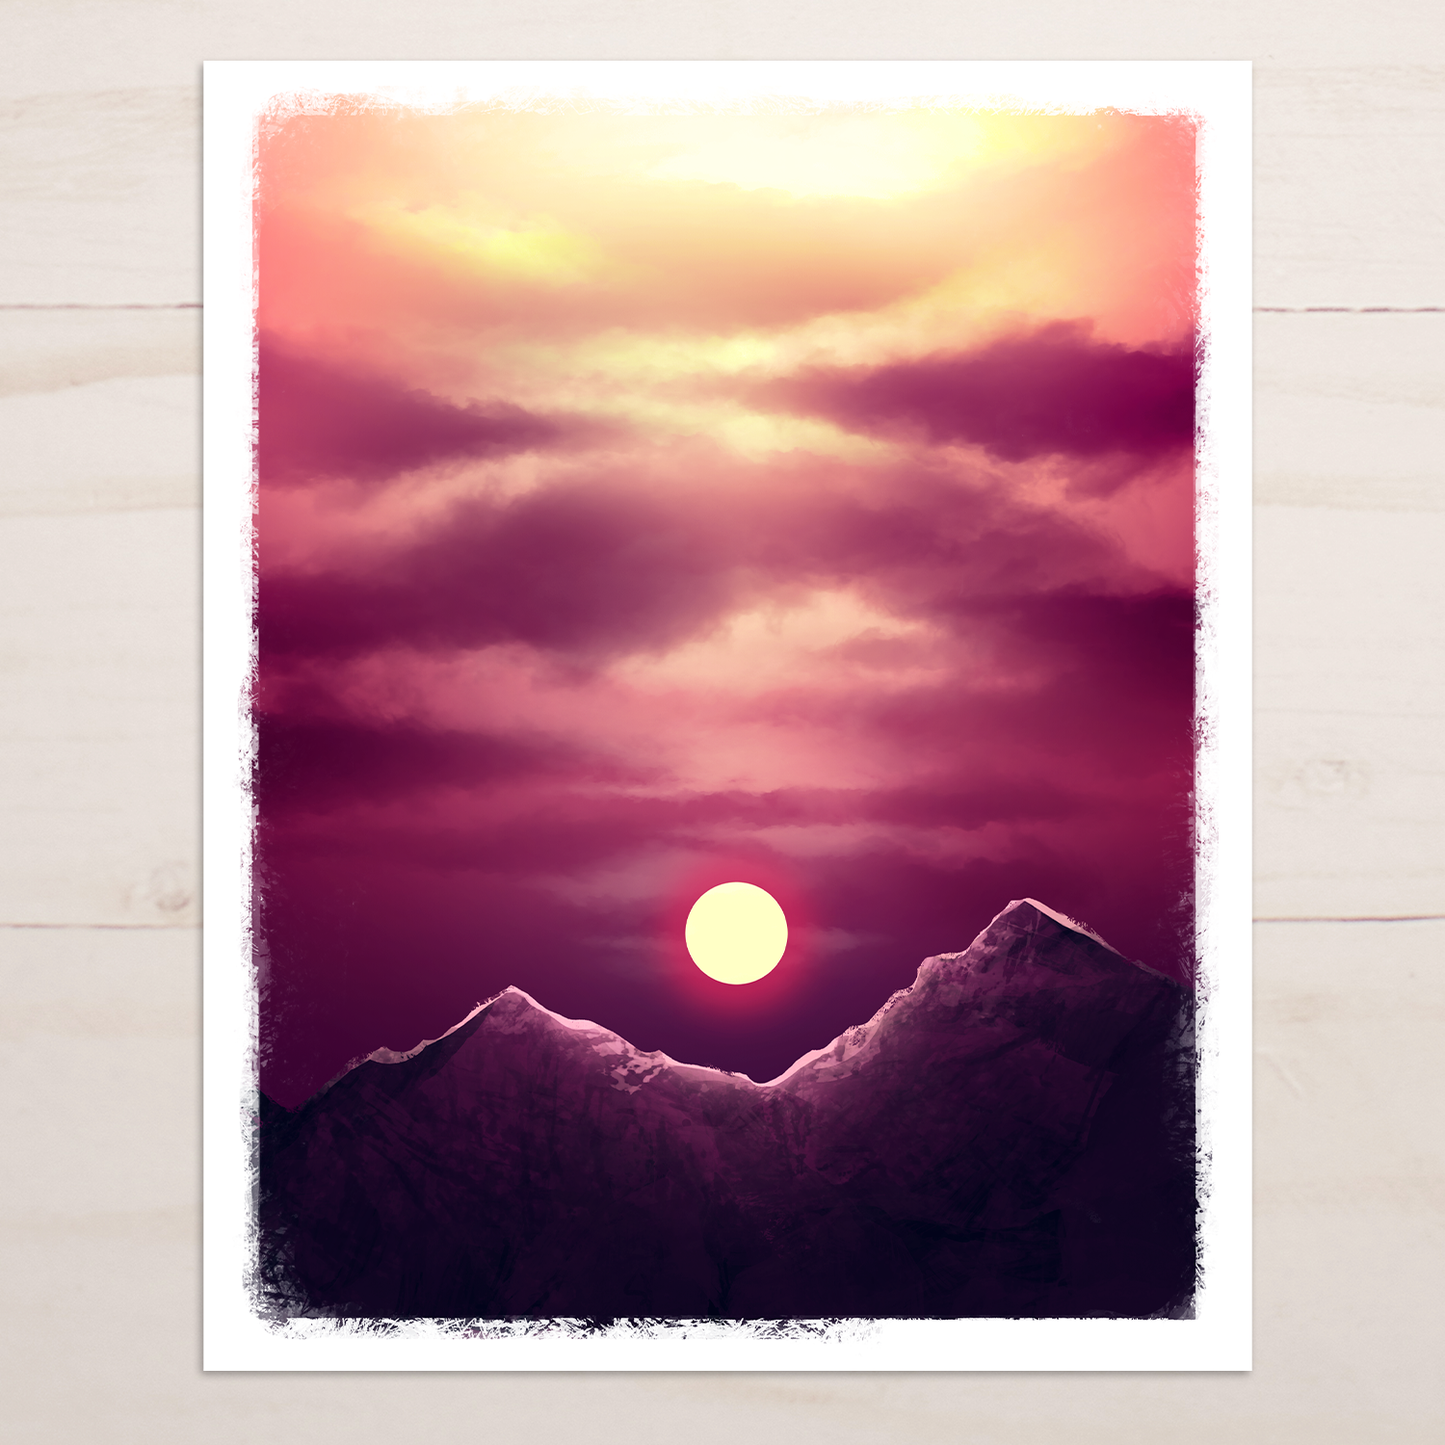 Midnight sun setting available as Framed Prints, Photos, Wall Art